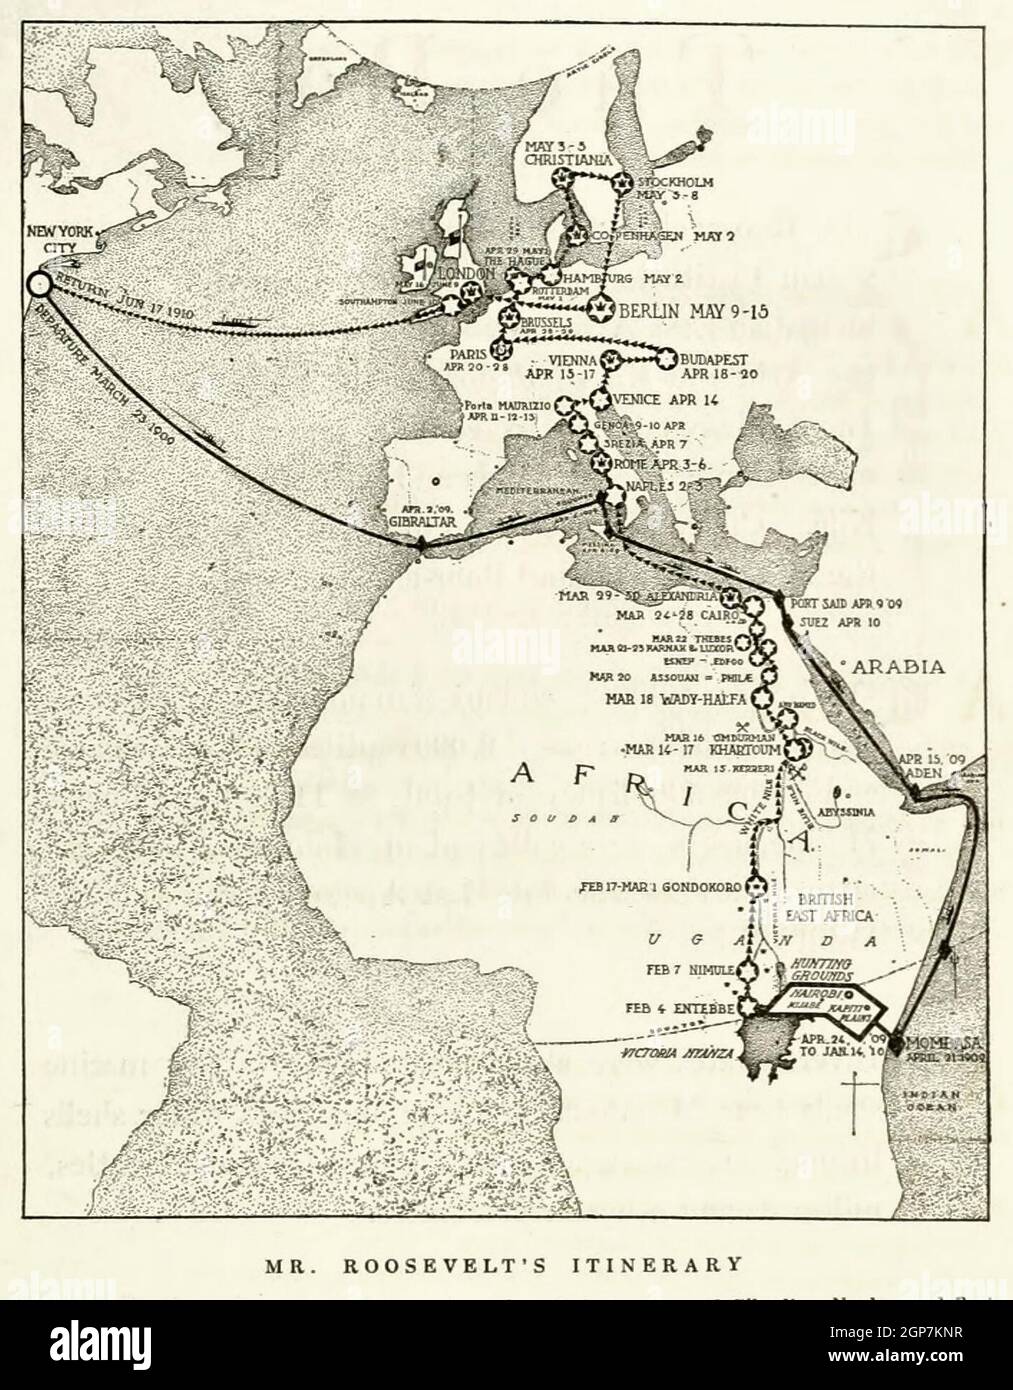 Itinéraire de M. Roosevelt - voyage de l'ancien Président Theodore Roosevelt à travers l'Europe et l'Afrique, 1910 Banque D'Images